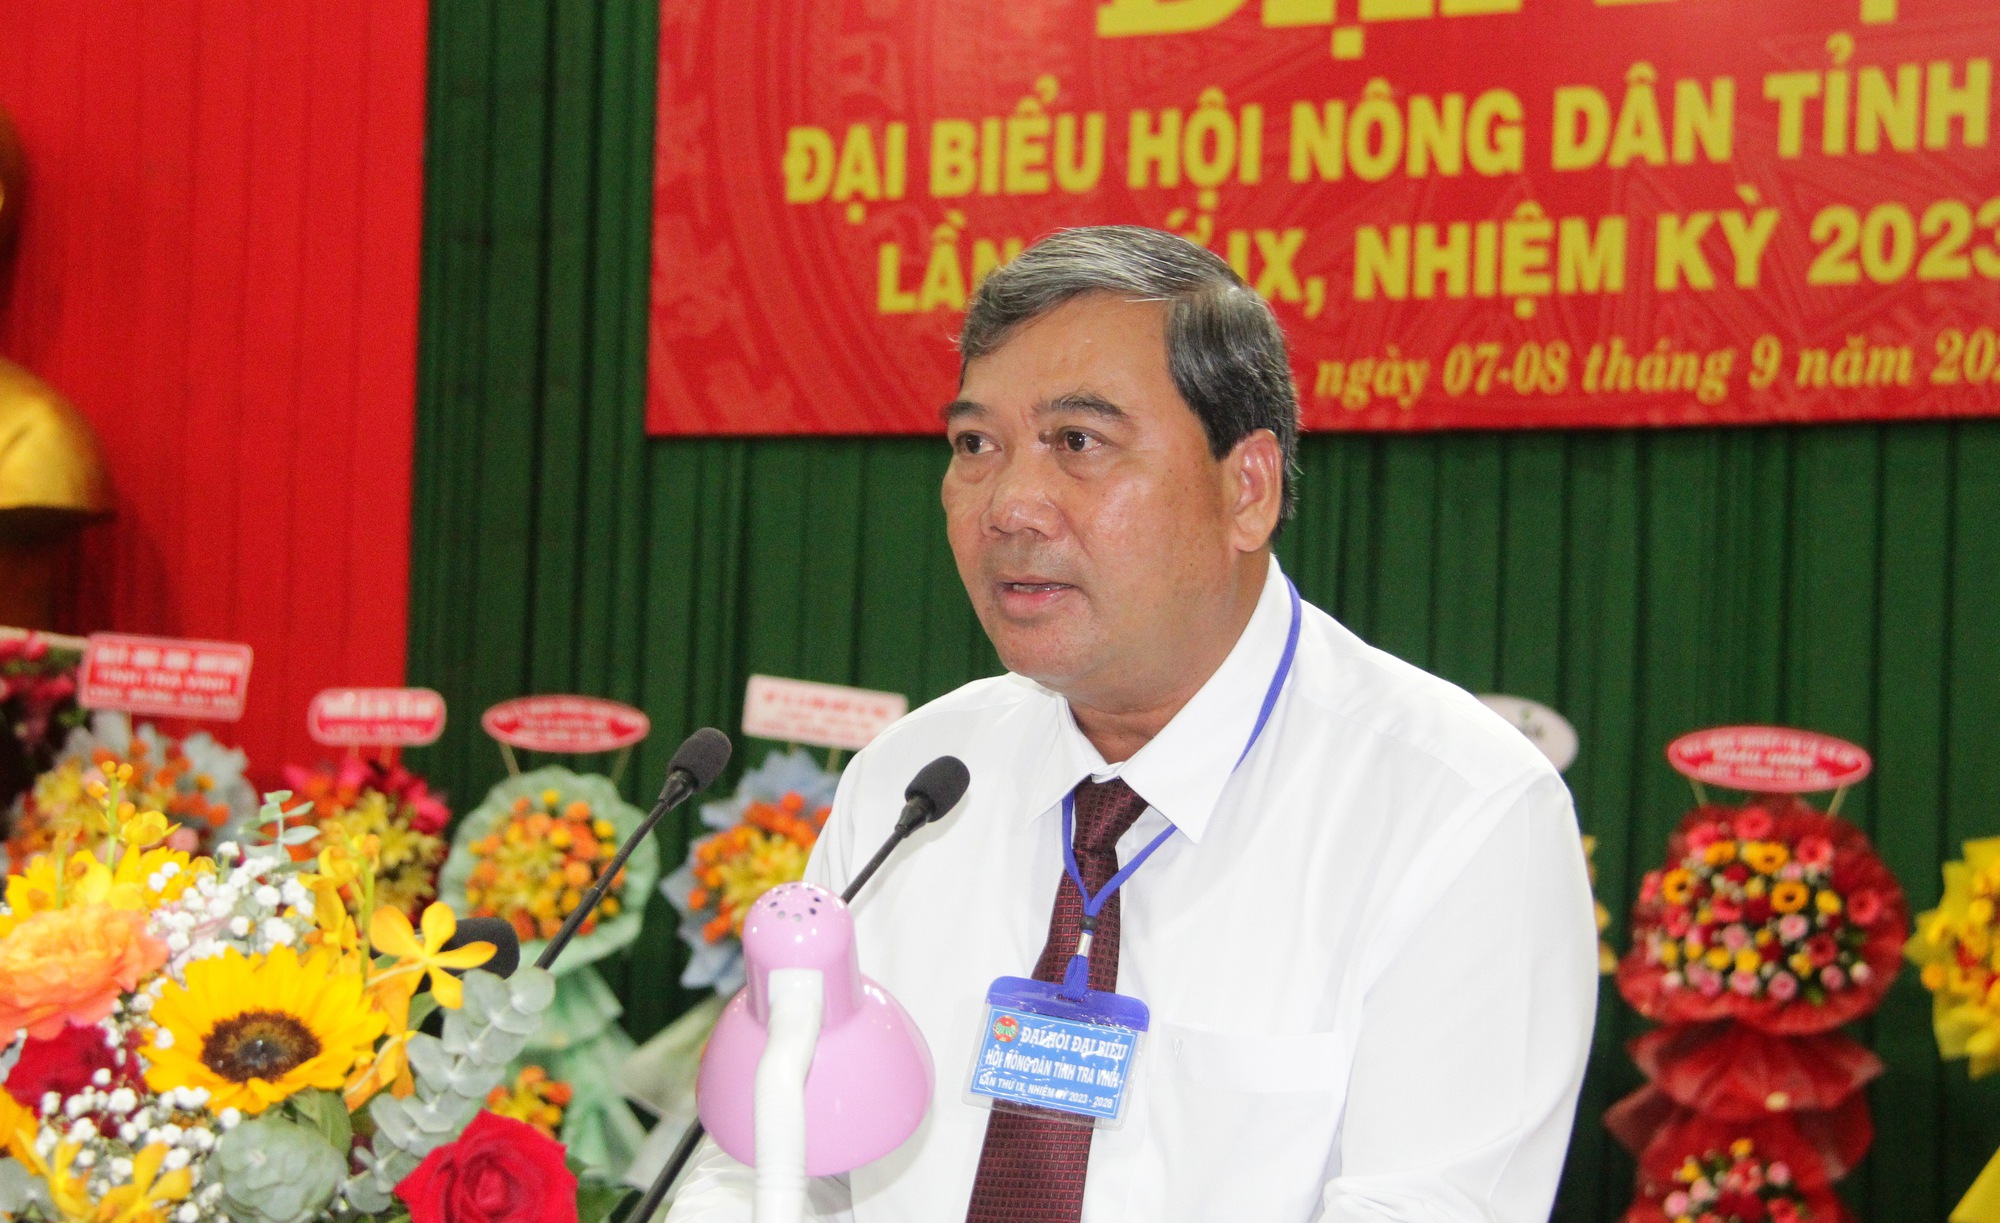 Bí thư Tỉnh ủy Trà Vinh, Phó Chủ tịch TƯ Hội NDVN dự, chỉ đạo Đại hội Hội Nông dân tỉnh Trà Vinh - Ảnh 6.